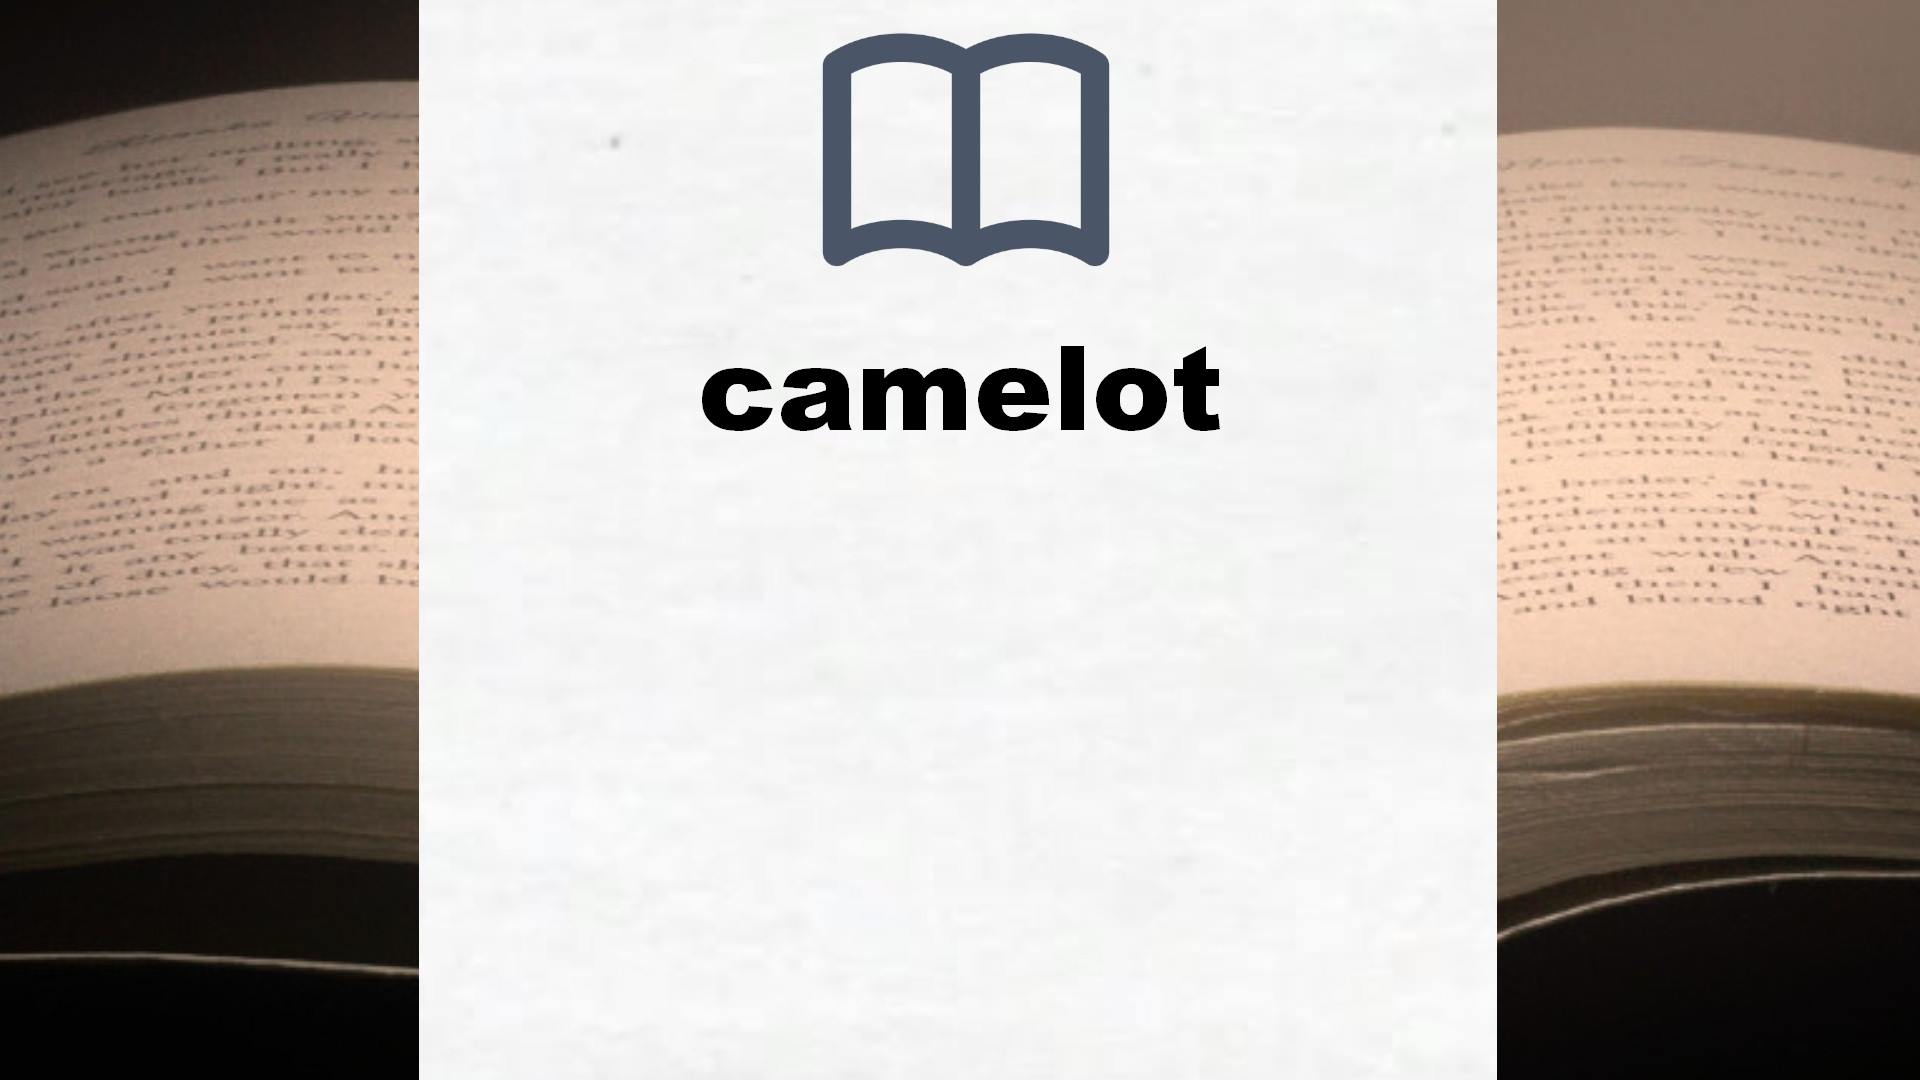 Libros sobre camelot